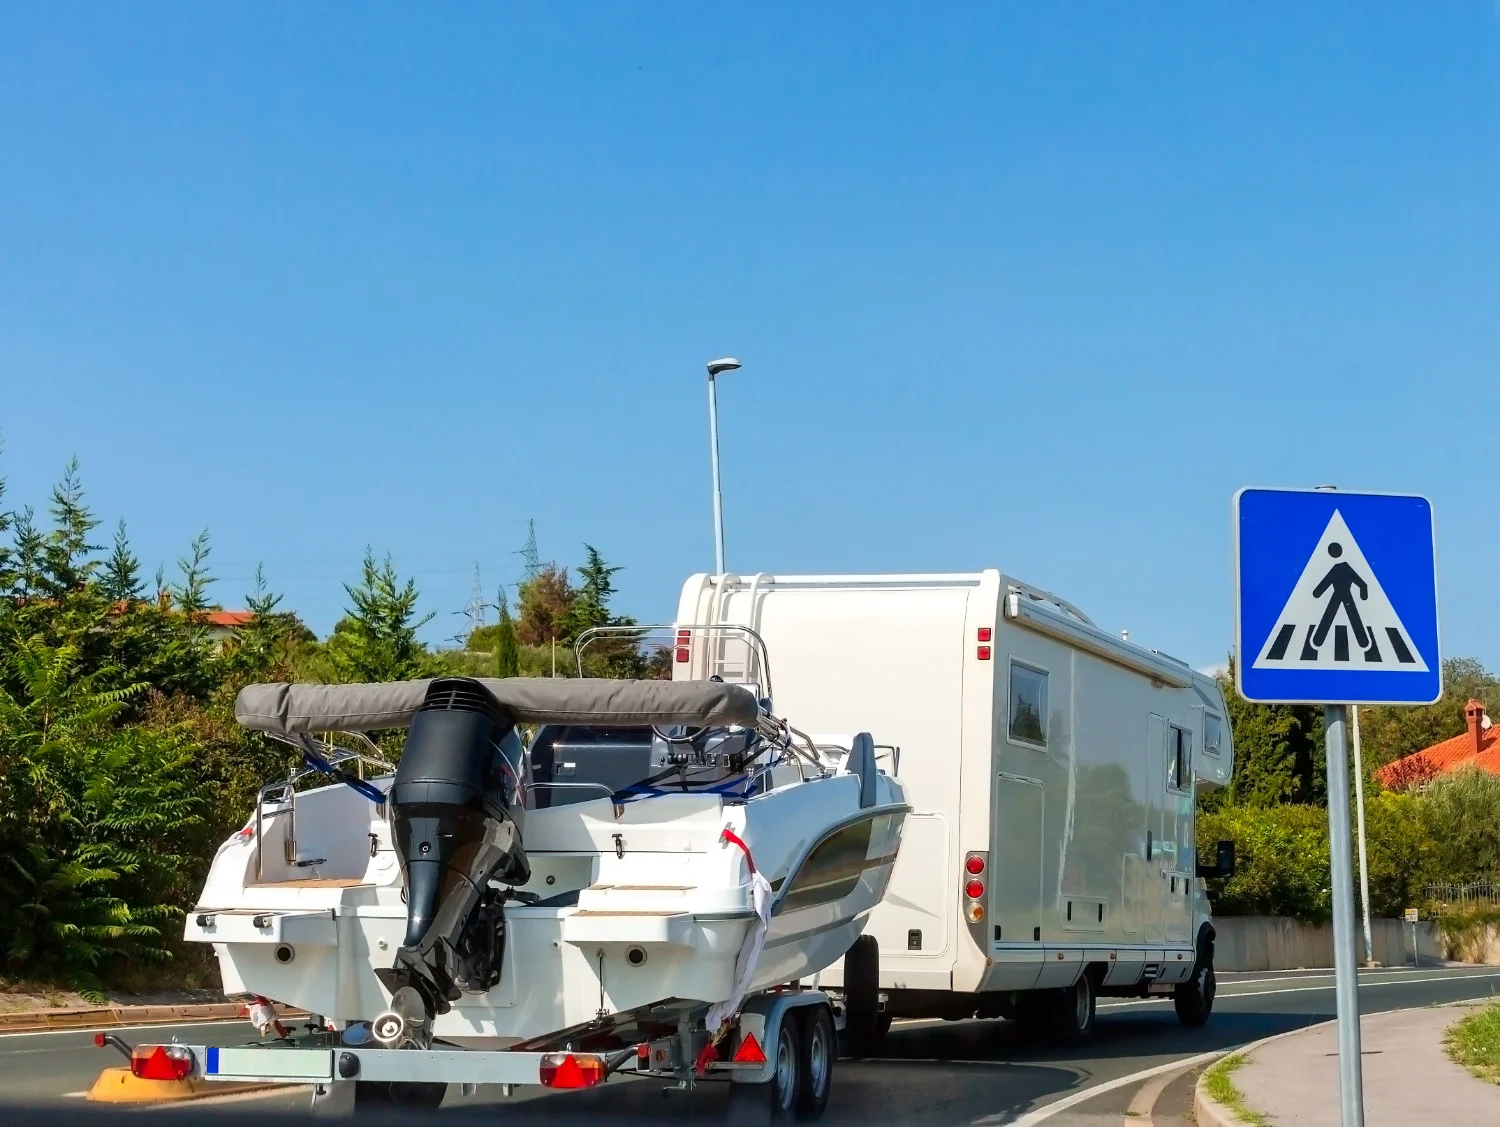 Ako vučete prikolicu, u Hrvatskoj važi smanjeno ograničenje brzine od 90 km/h na autoputevima i 80 km/h na seoskim putevima.